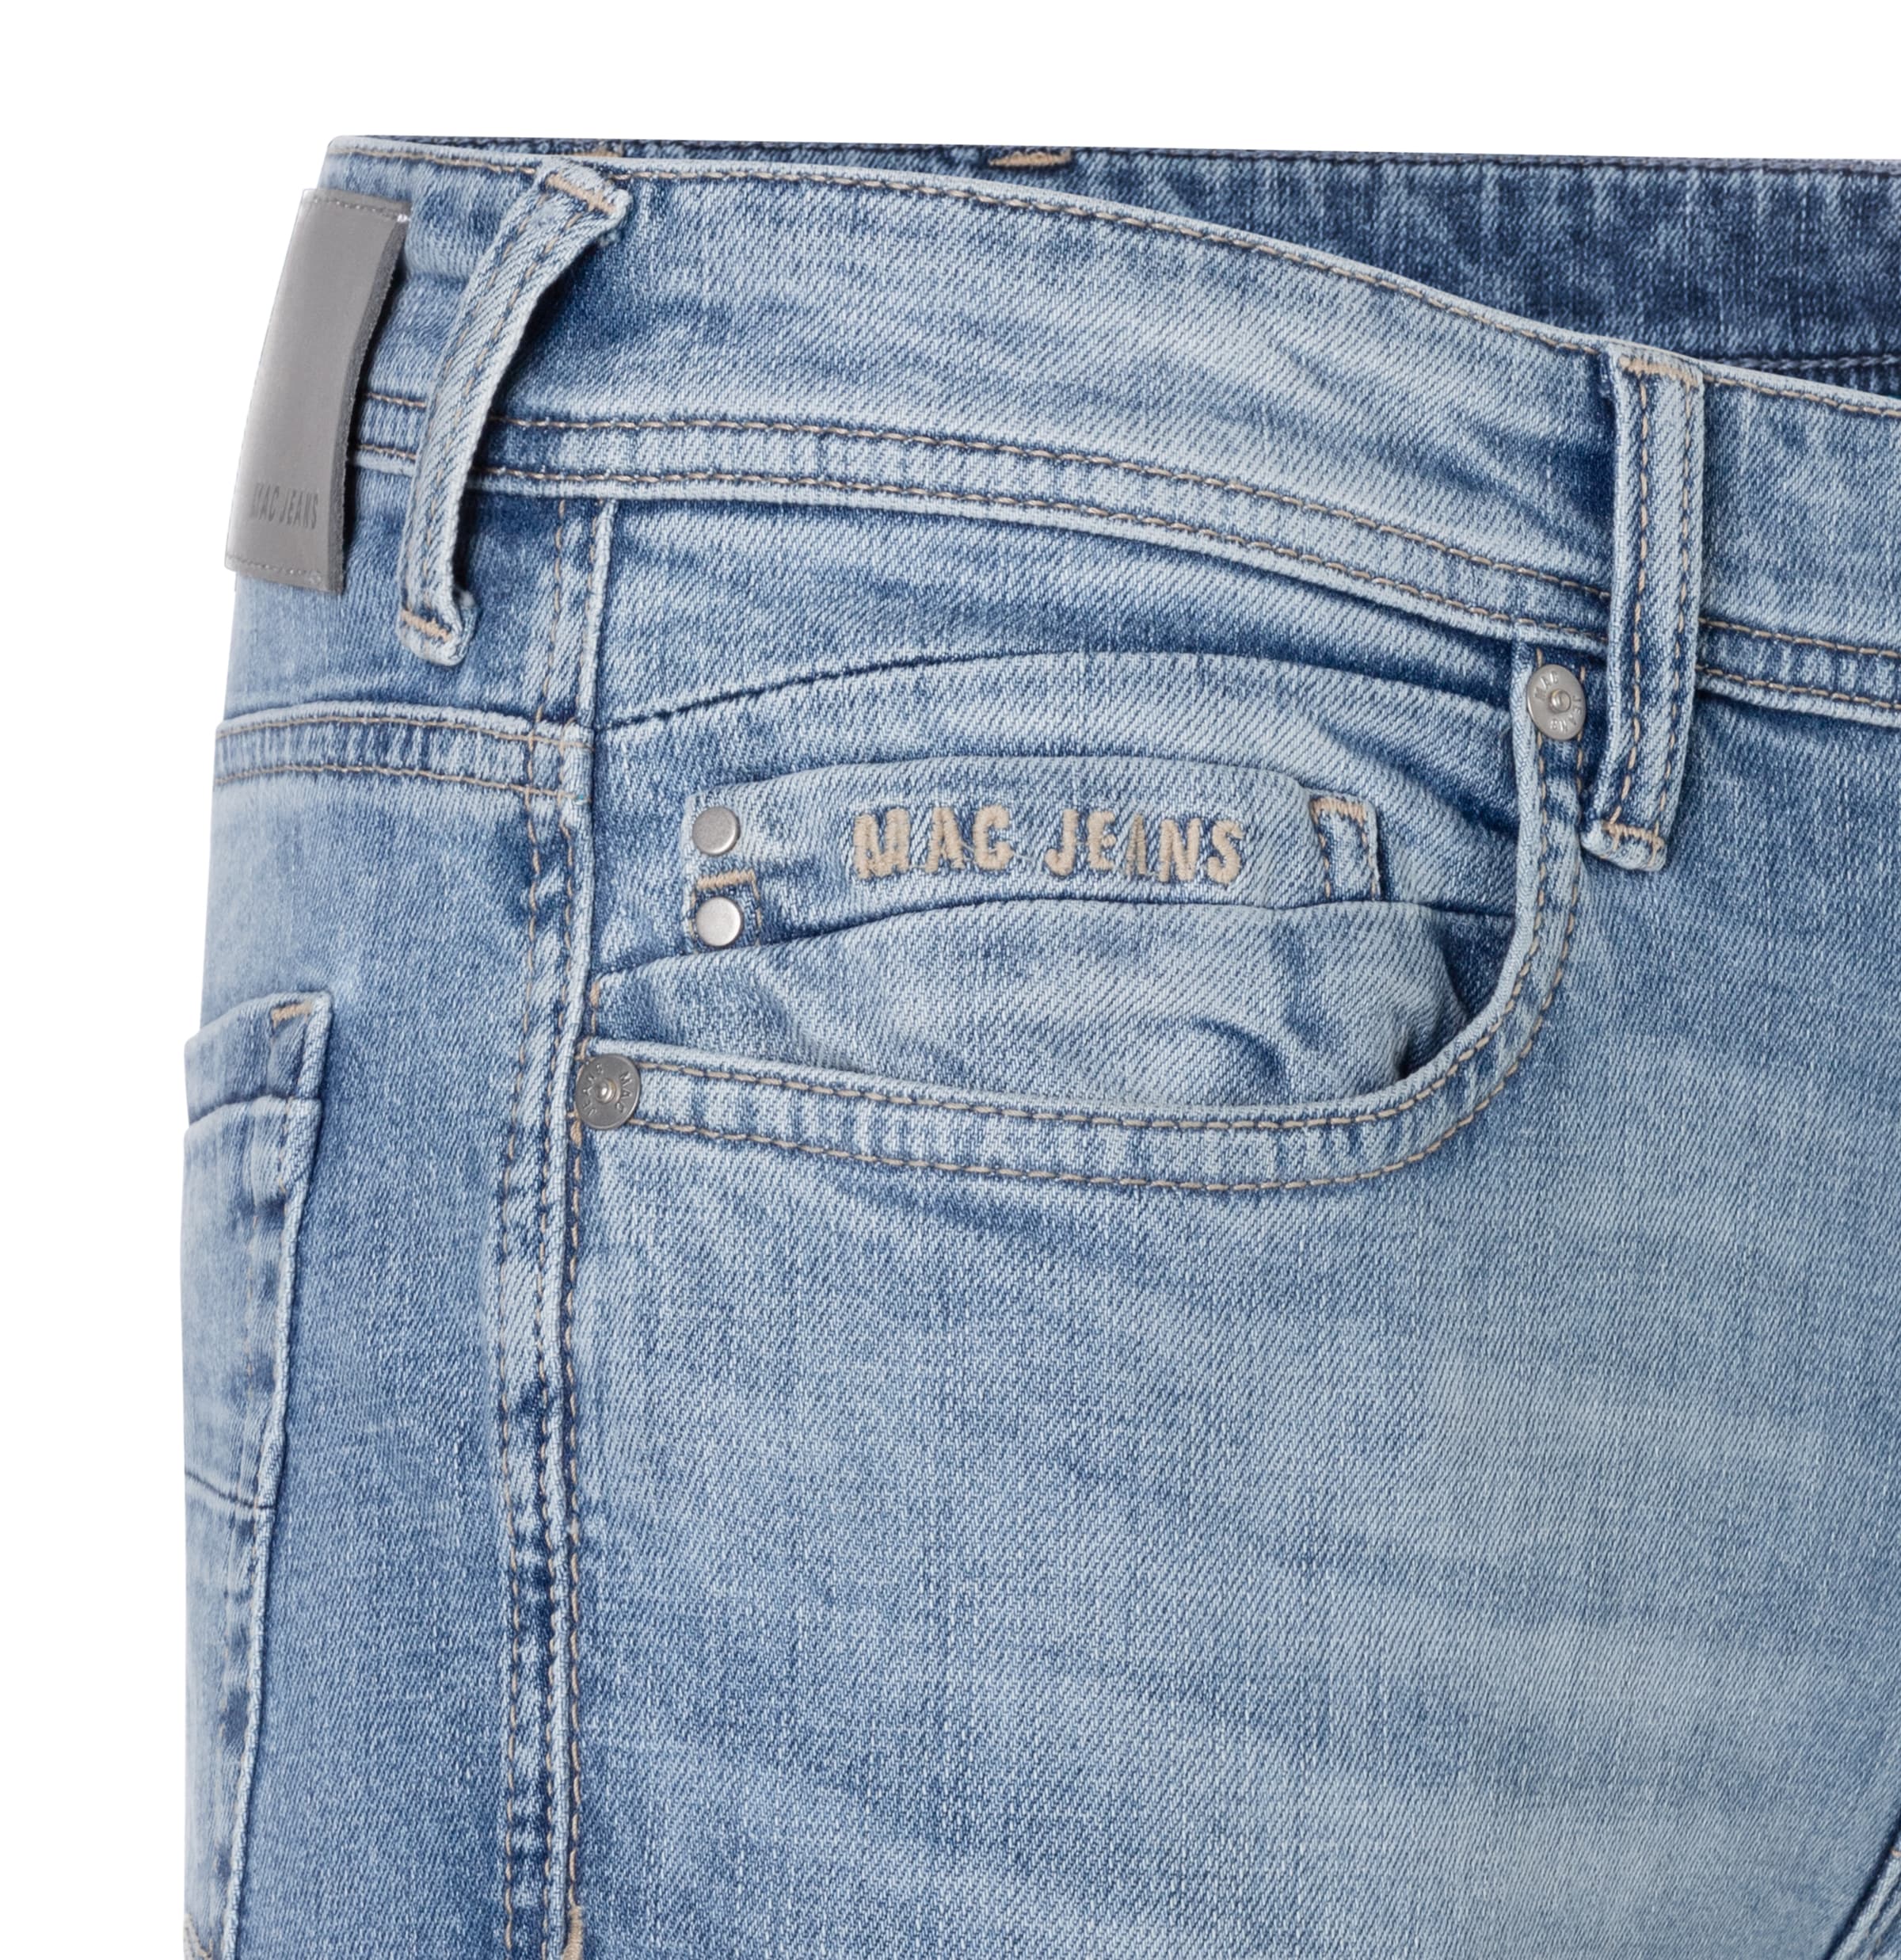 ➤ Jeans ohne Mindestbestellwert kaufen